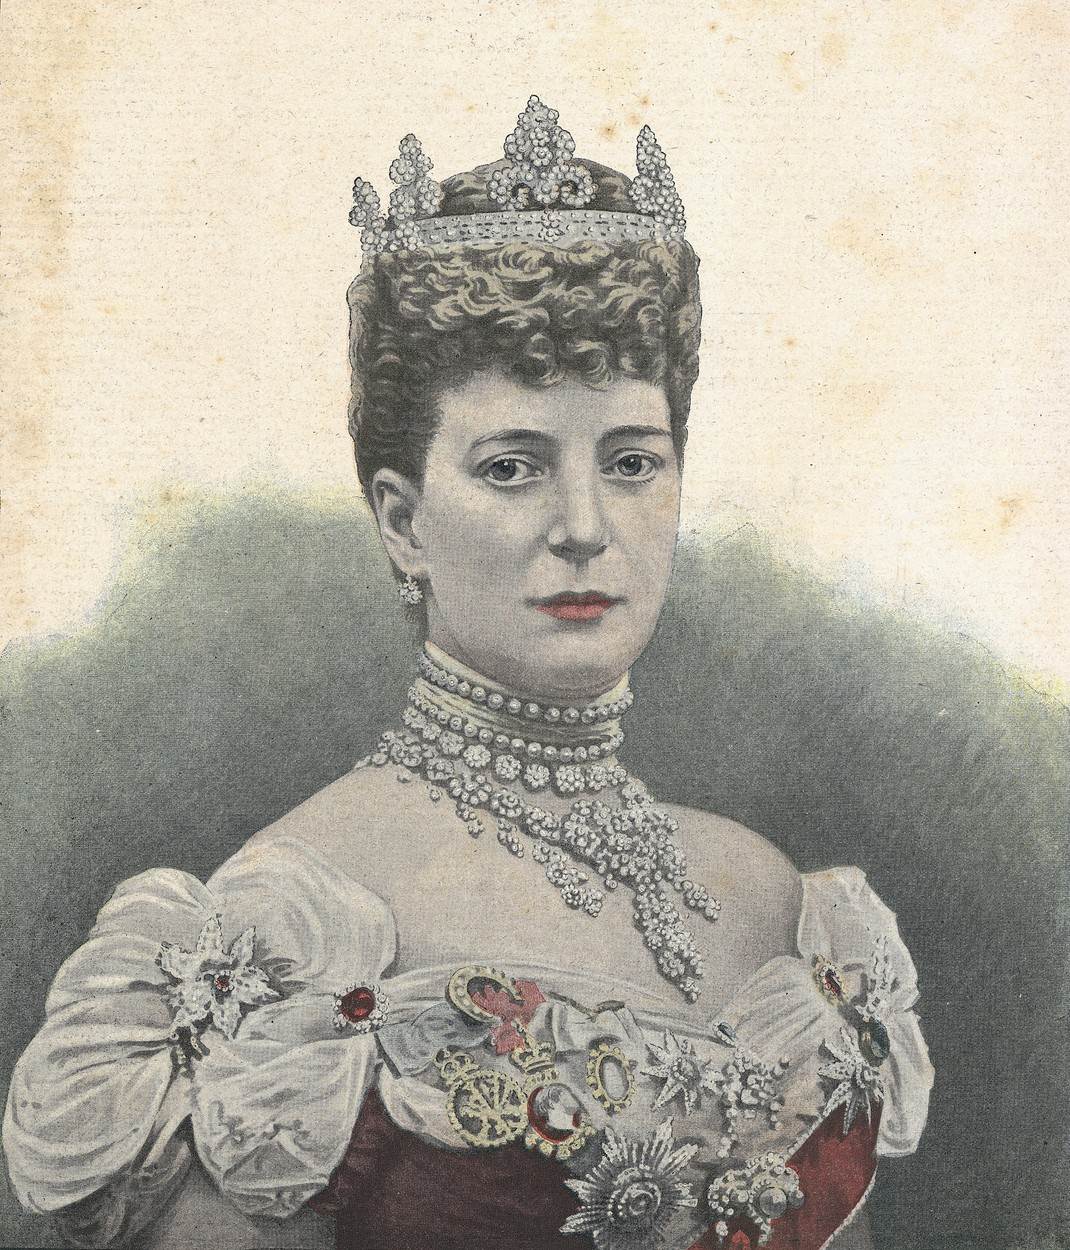 Kraljica Alexandra, supruga kralja Edwarda VII., često je viđana s raskošnim dijamantim choker ogrlicama